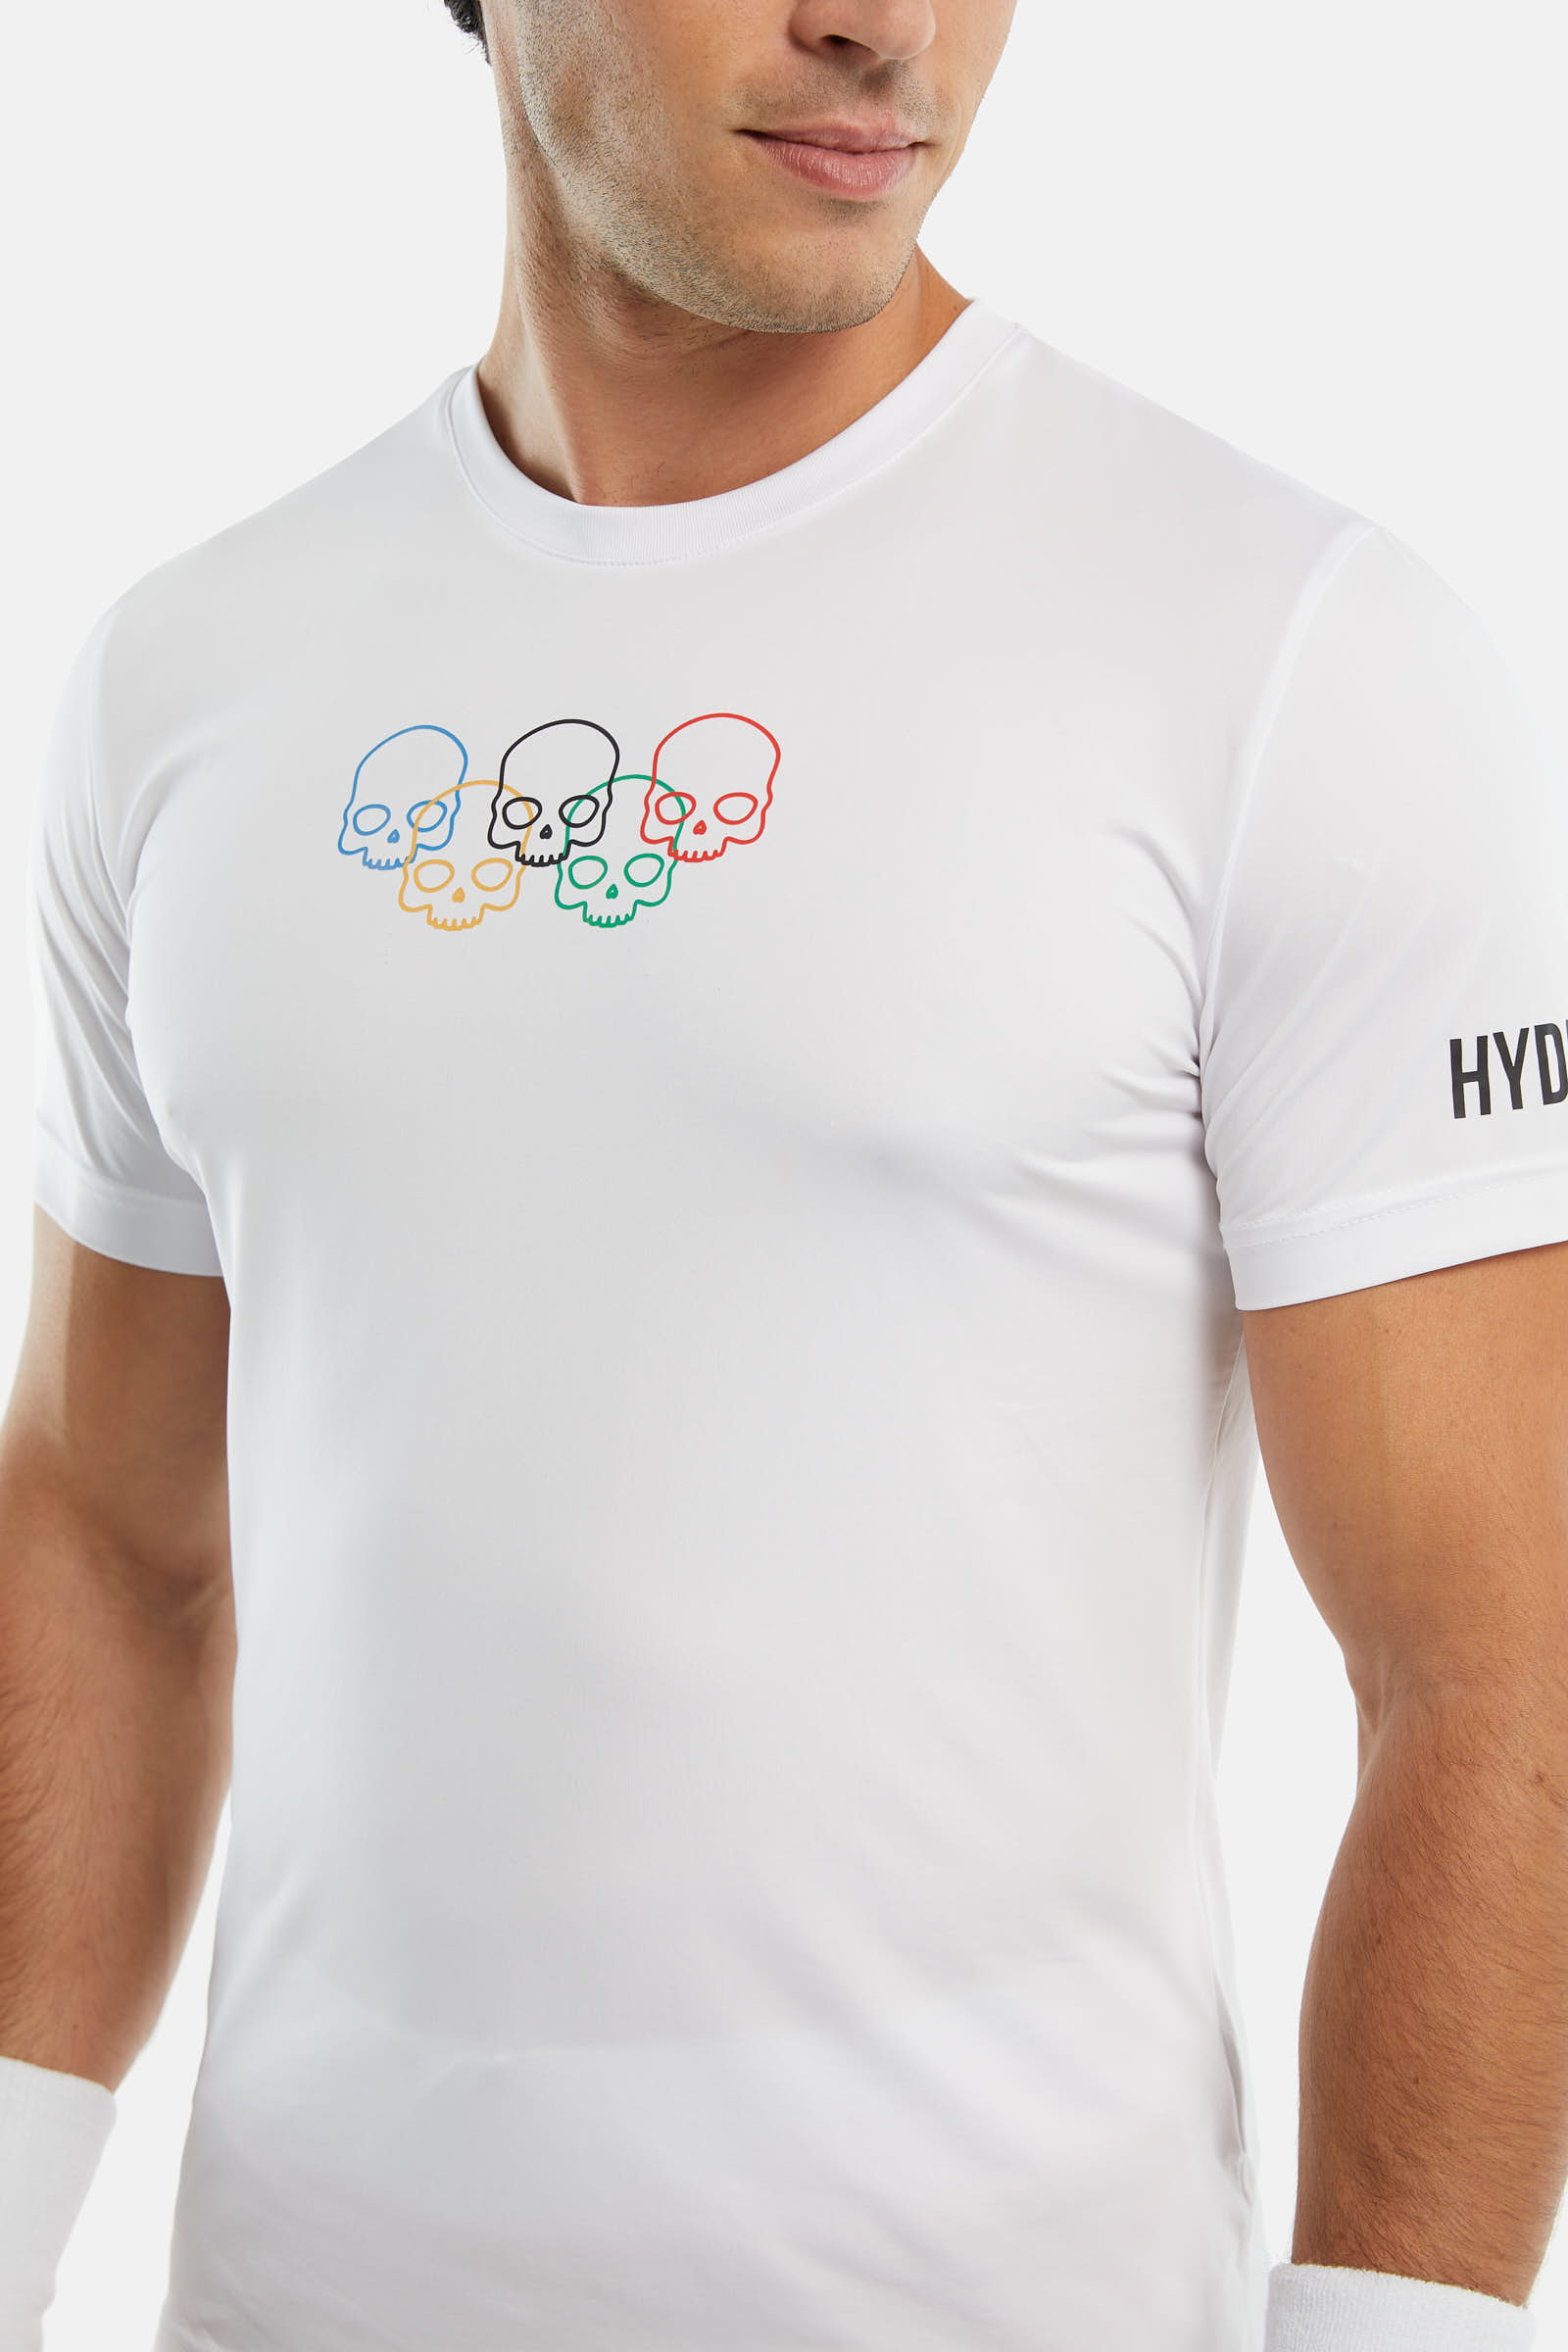 OLYMPIC SKULL TECH T-SHIRT - WHITE - Hydrogen - Luxury Sportwear